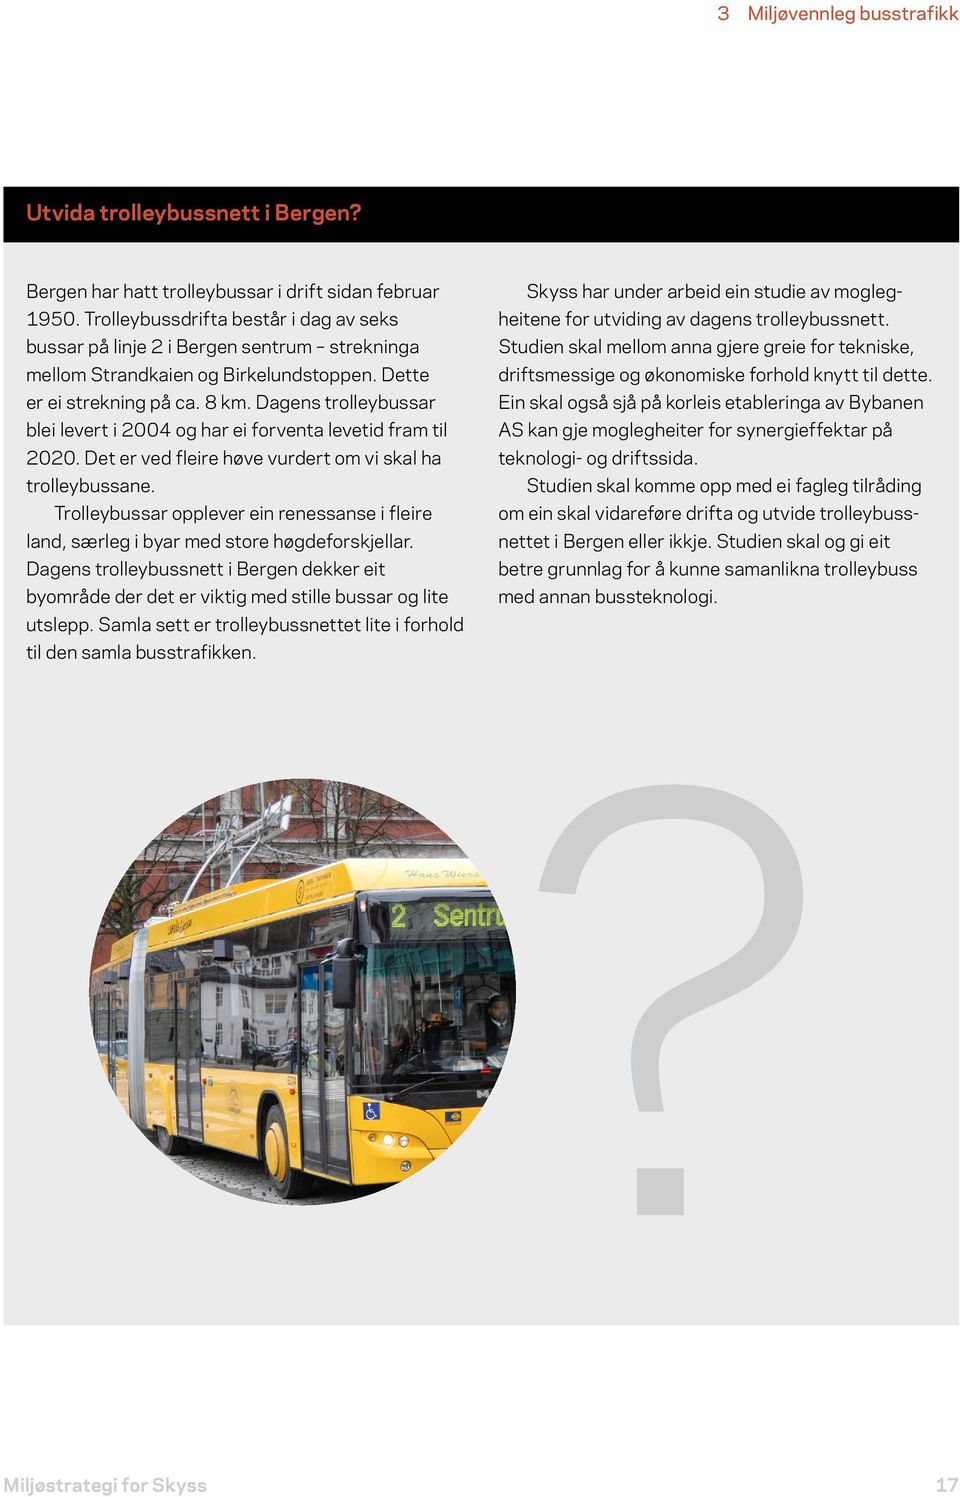 Dagens trolleybussar blei levert i 2004 og har ei forventa levetid fram til 2020. Det er ved fleire høve vurdert om vi skal ha trolleybussane.